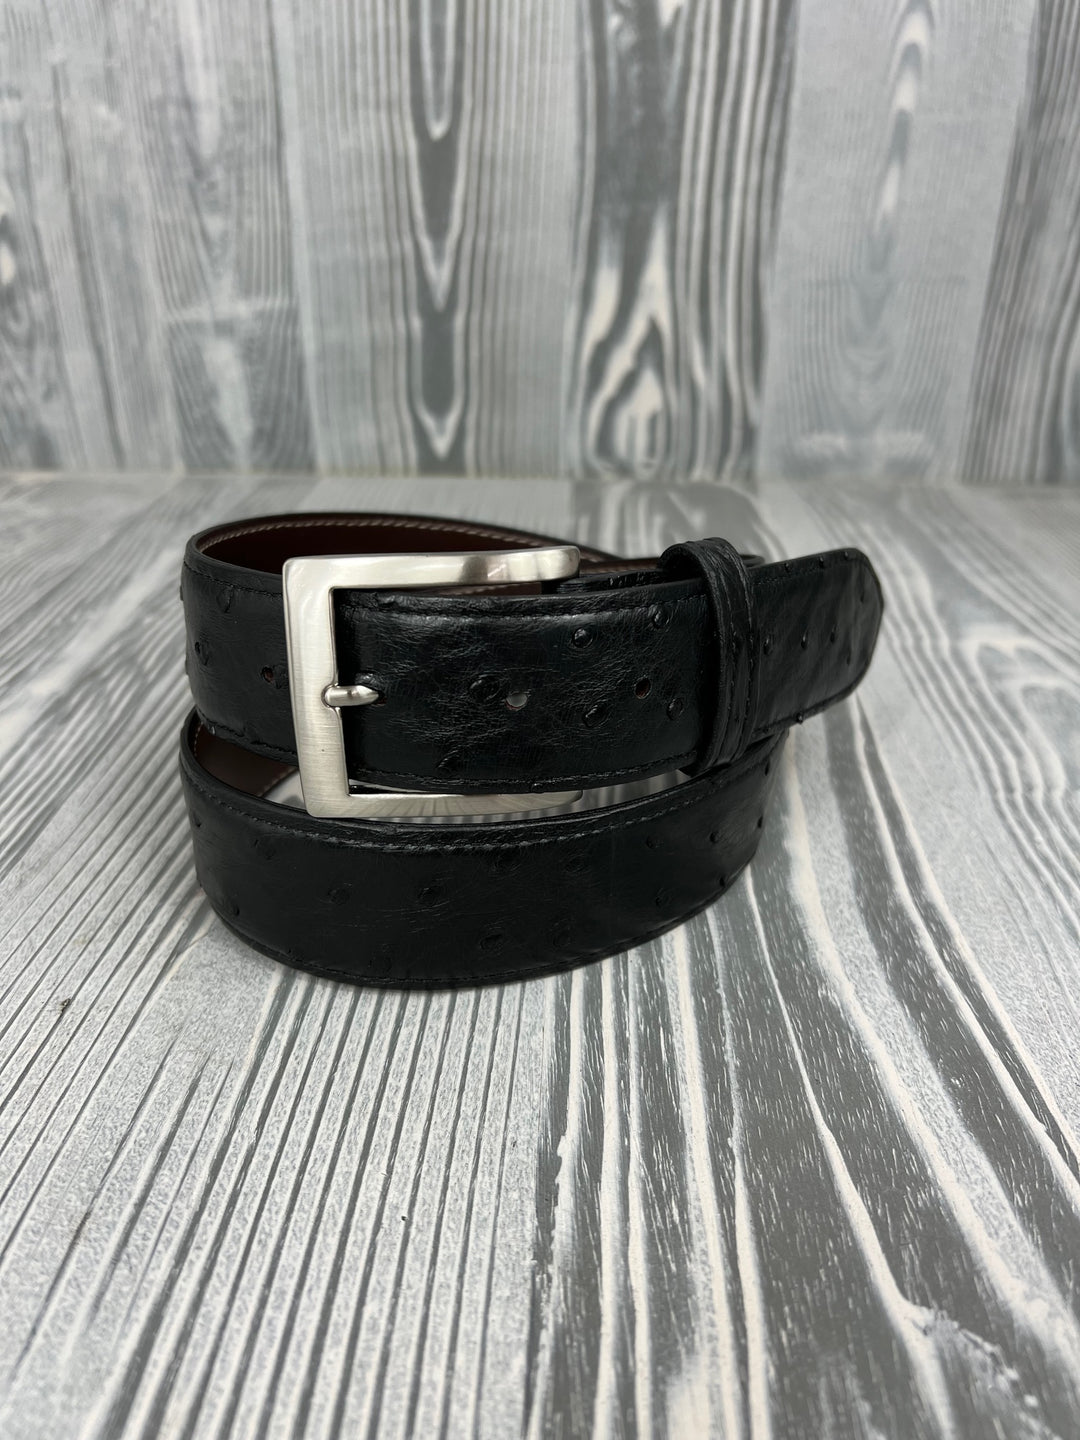 Cintura Chacon nera completa di struzzo con penna d'oca 1 1/2".